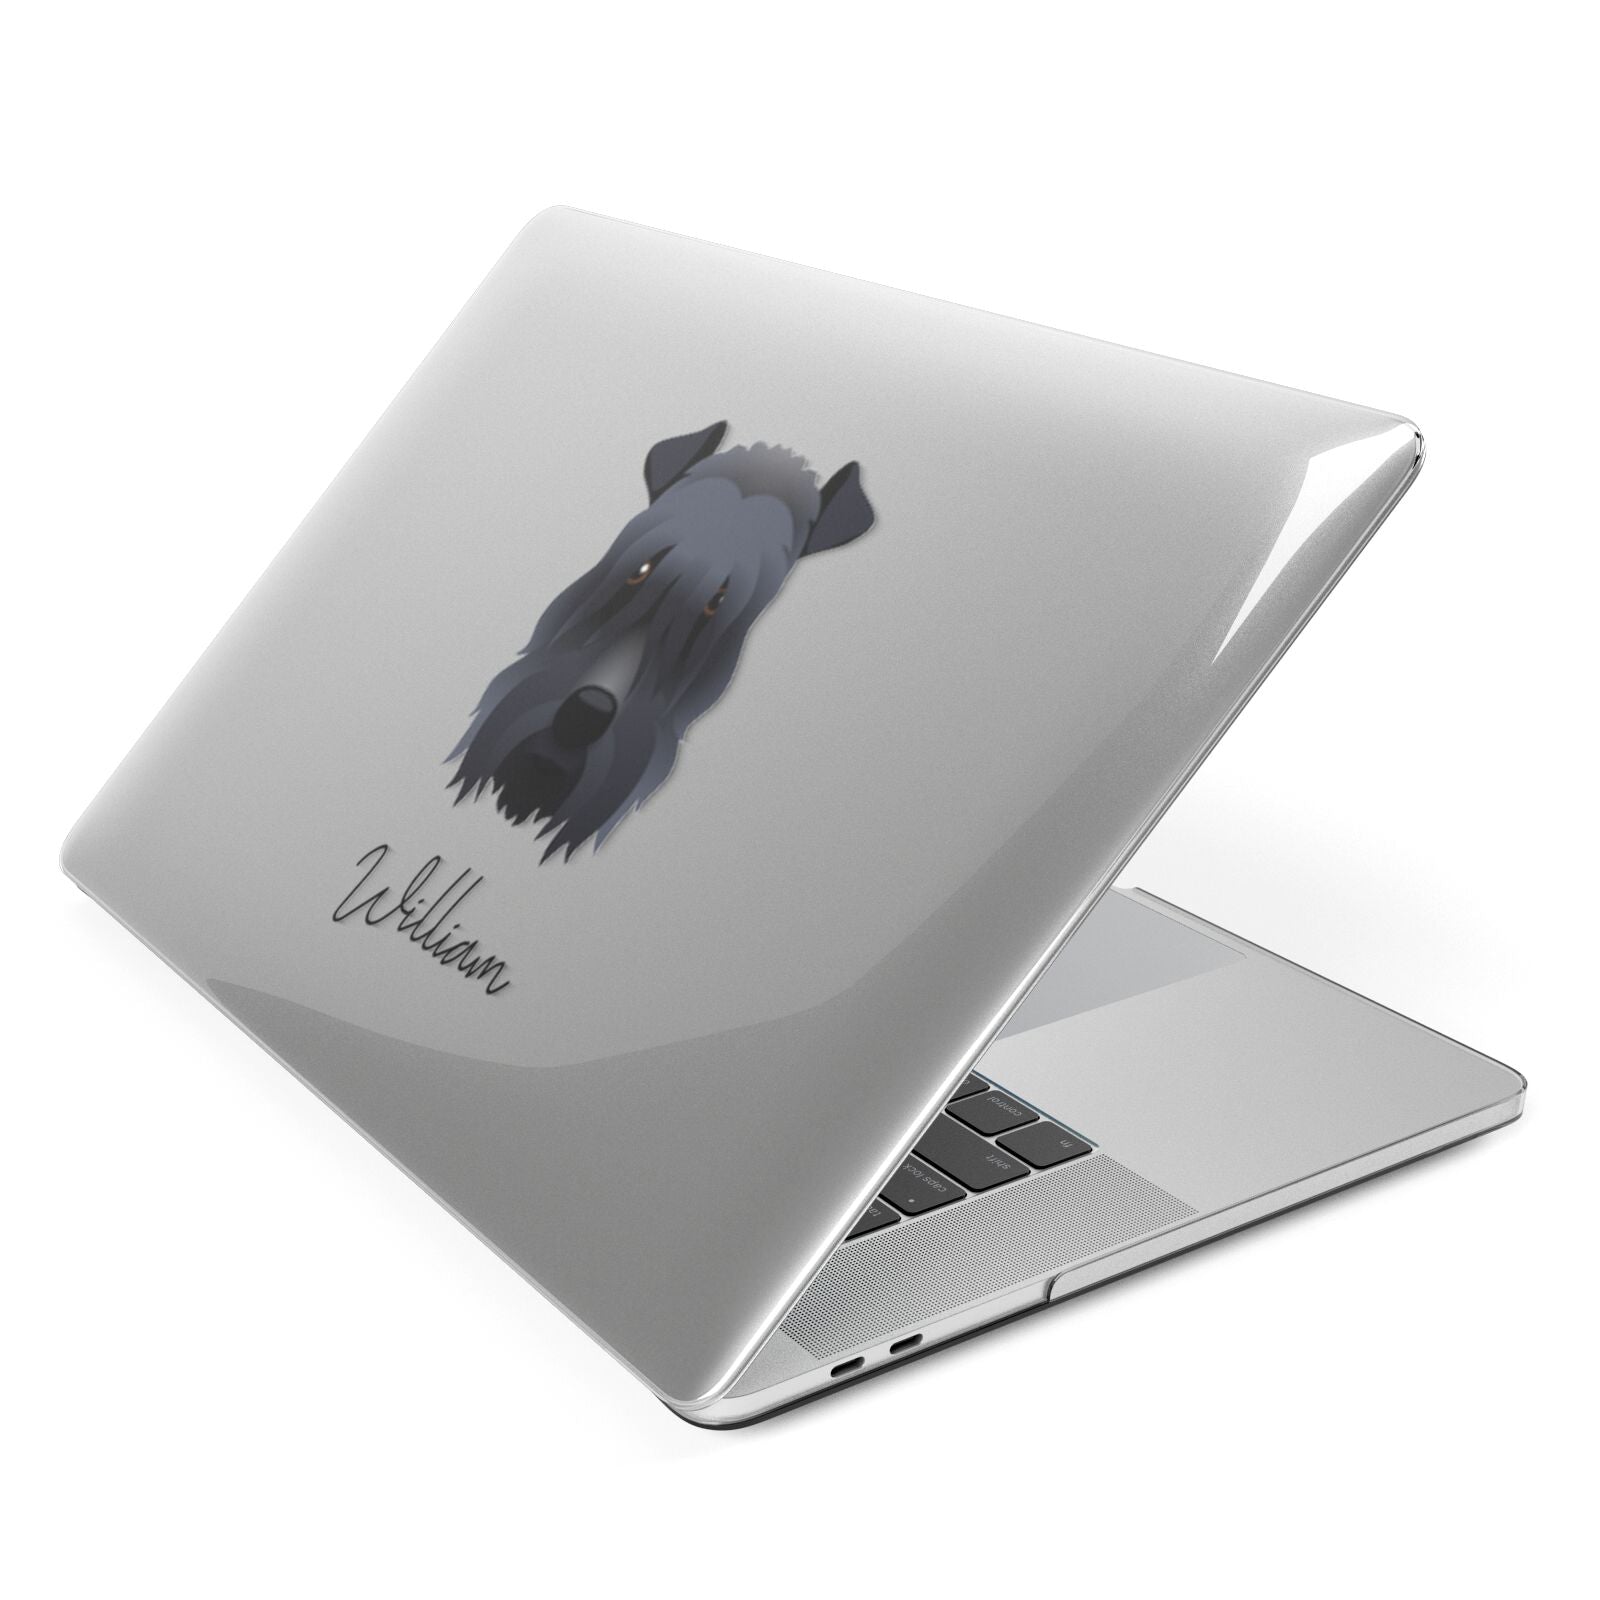 Kerry Blue Terrier Personalised Apple MacBook Case Side View